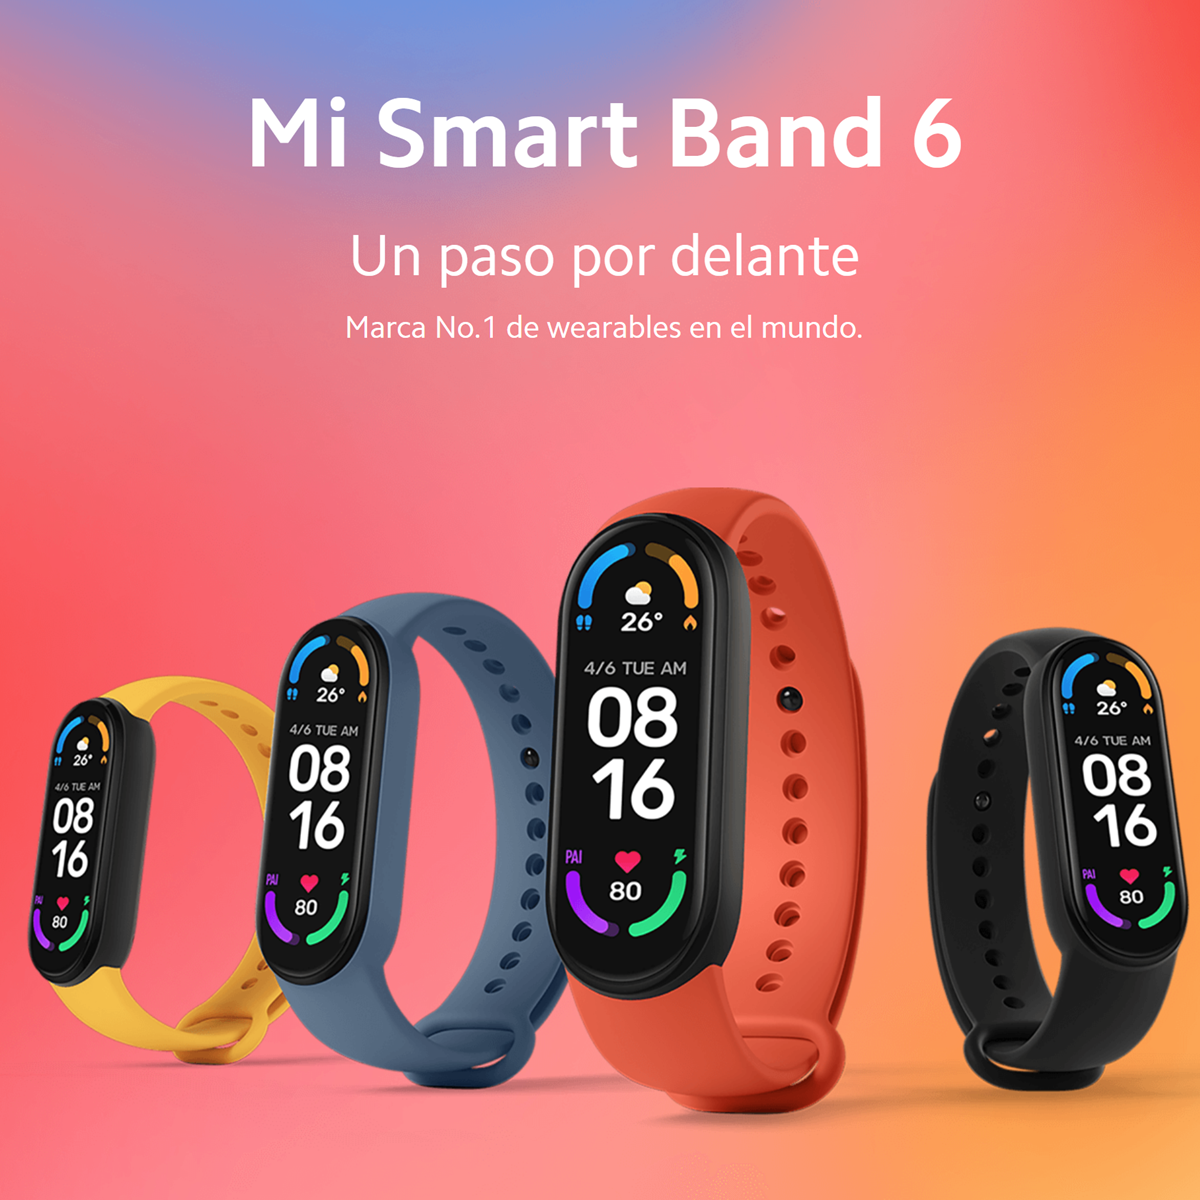 Nueva Xiaomi Mi Smart Band 6: características y precios en Ecuador –  TecnoMarket